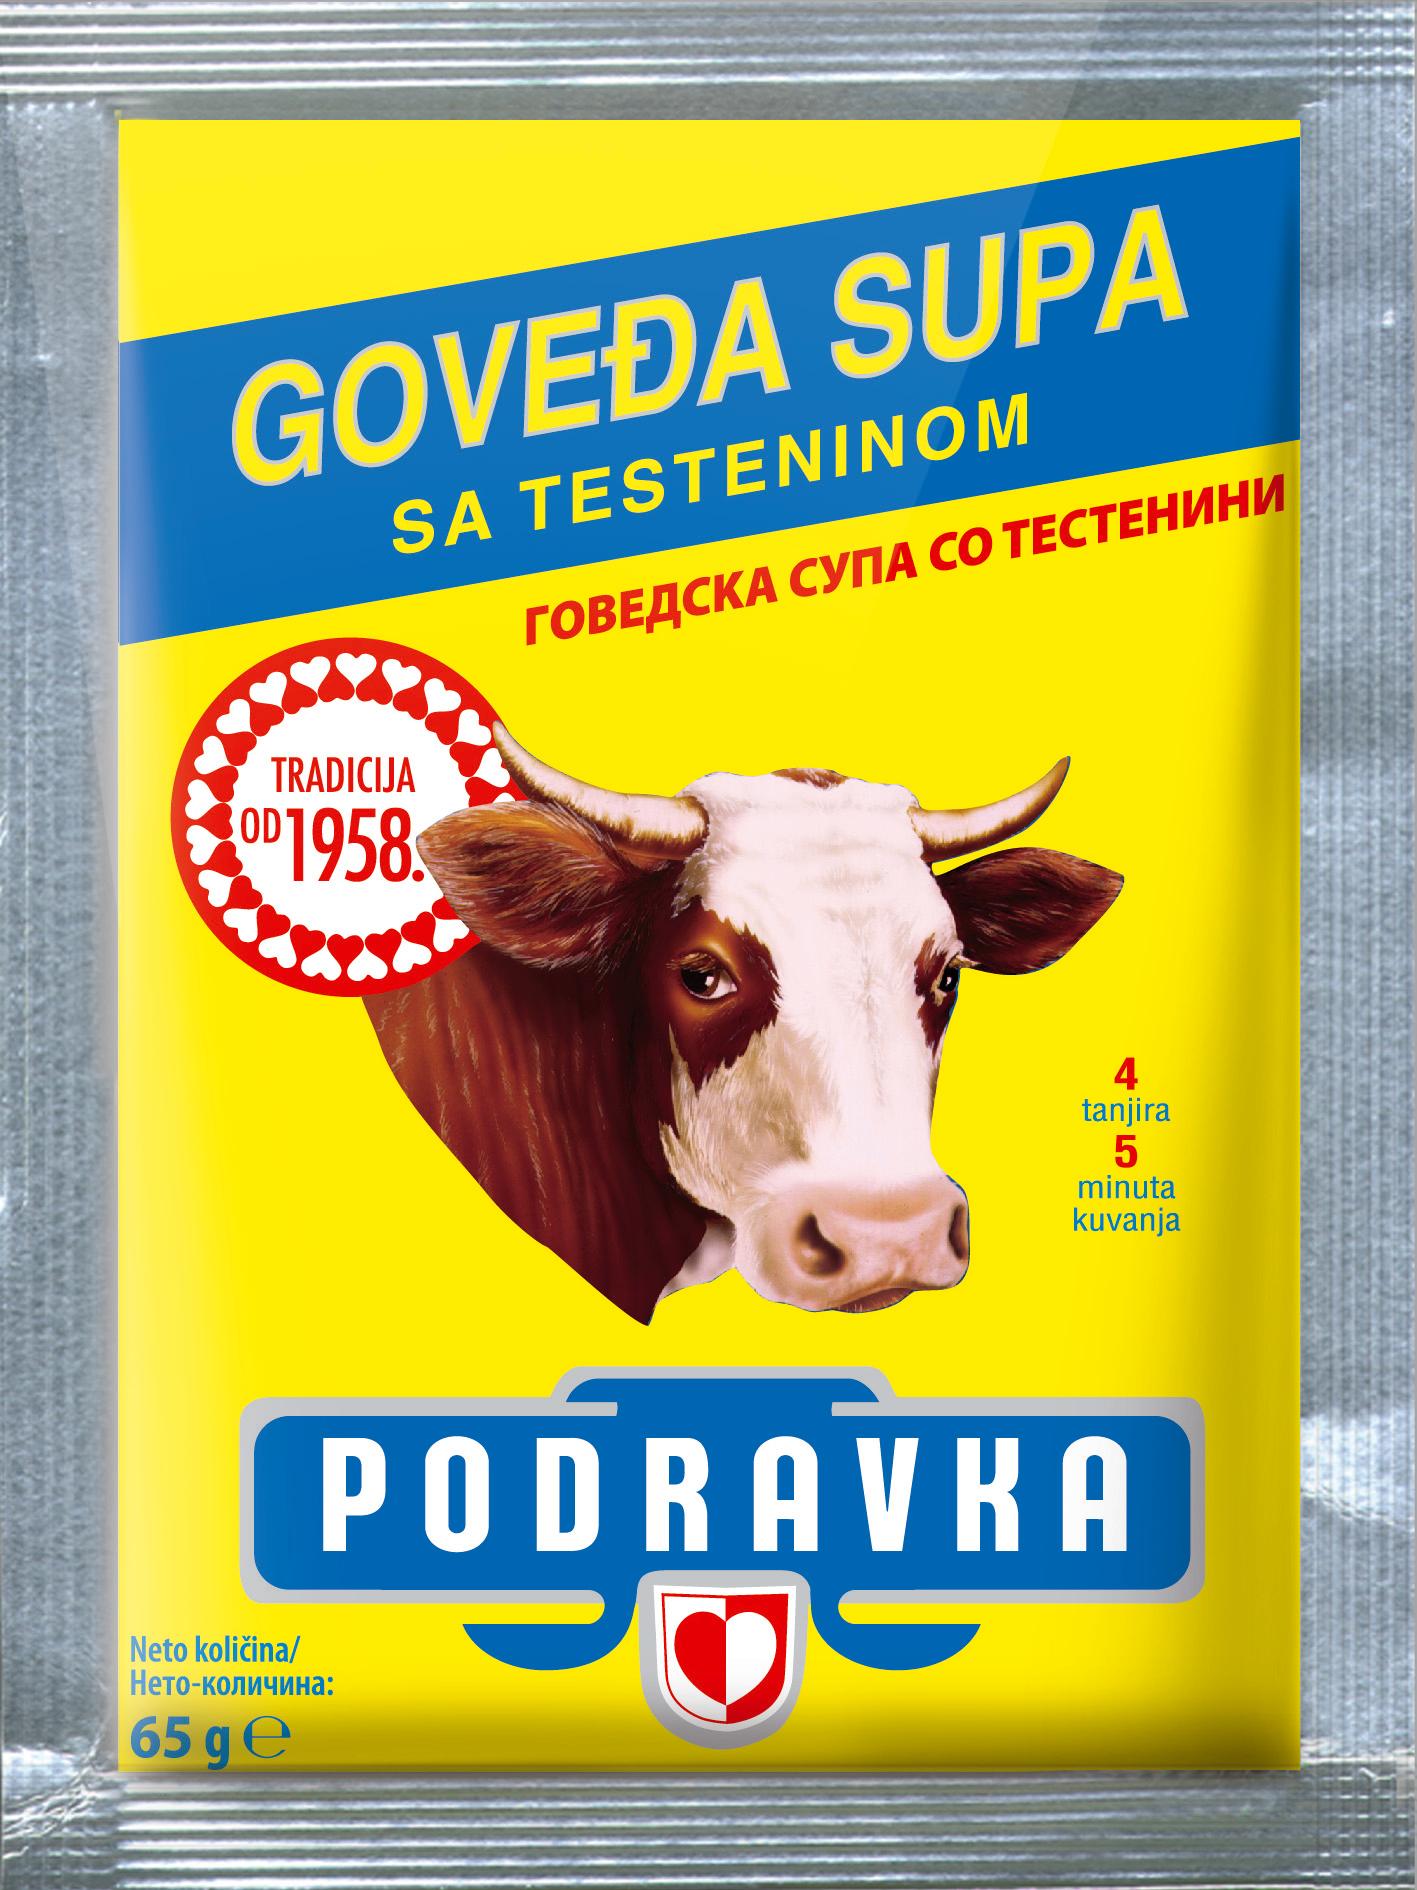 Selected image for PODRAVKA Goveđa supa sa testeninom 65g